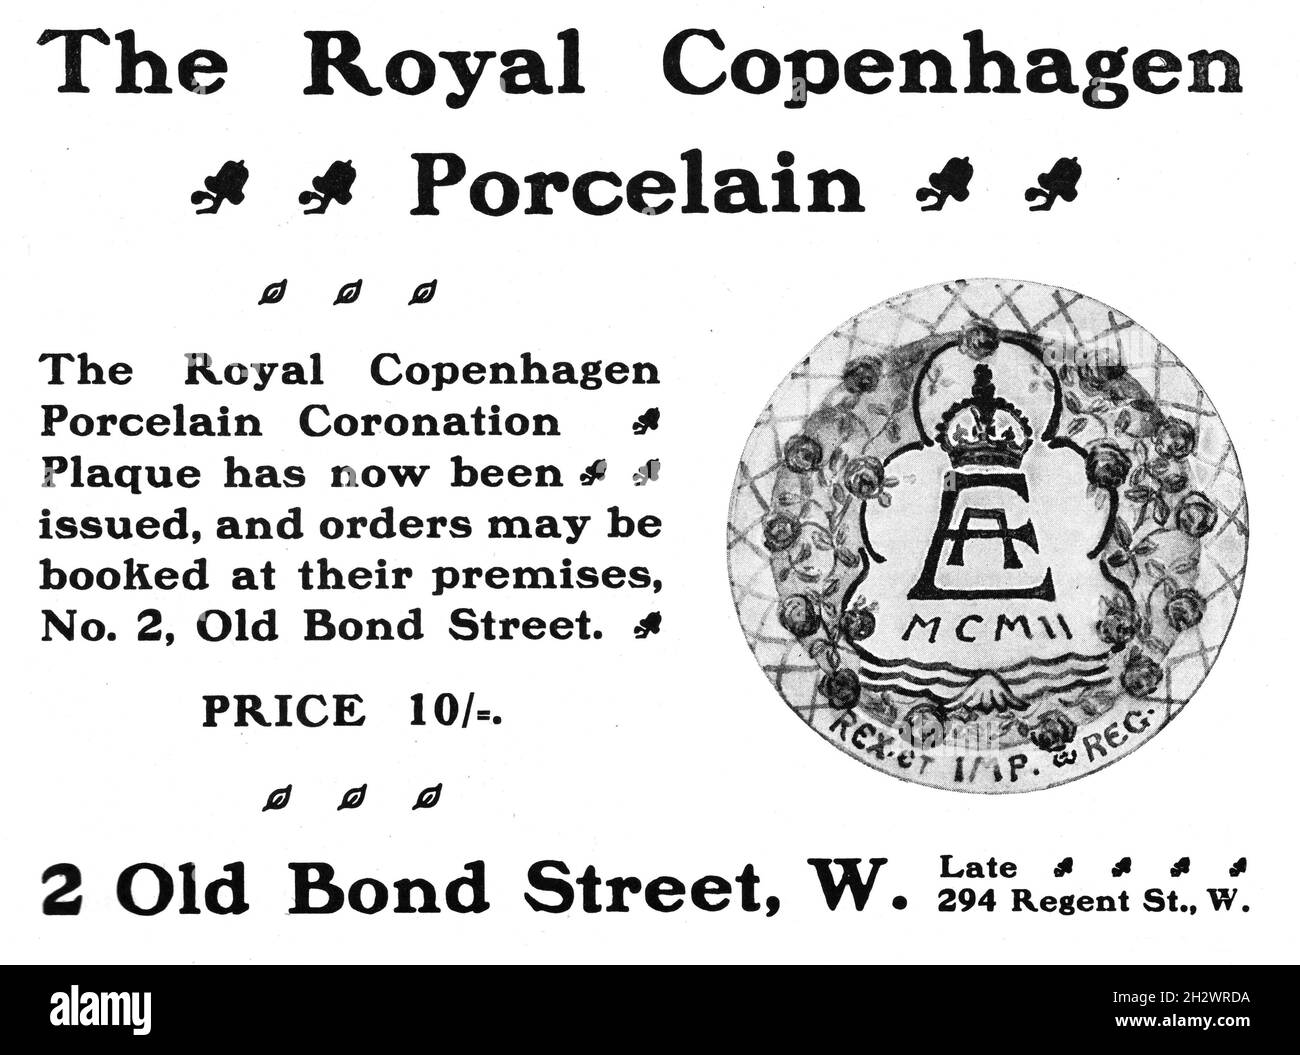 Eine Werbung aus dem Jahr 1902, die eine Gedenktafel zur Krönung des Königs Eduard VII. Bewirbt. Hergestellt von Royal Copenhagen Porcelain. Der Hauptsitz des Unternehmens in London befand sich in der Old Bond Street 2. Stockfoto